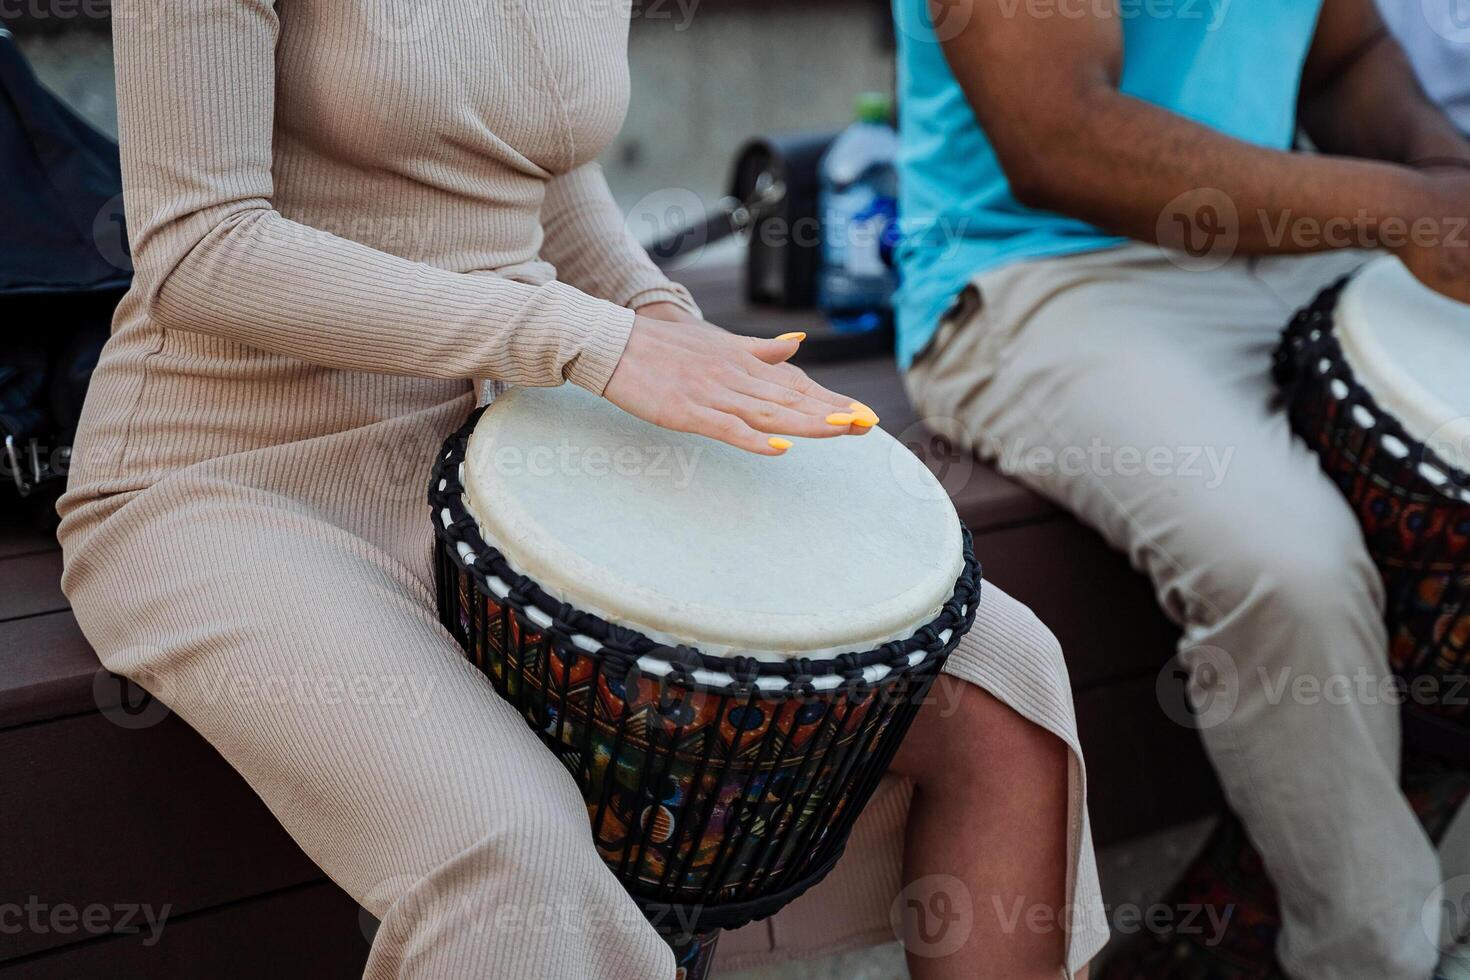 de meisje Toneelstukken de trommel djembe samen met andere mensen, straat muzikanten ritme de ritmes van ethno muziek- met hun handen. foto